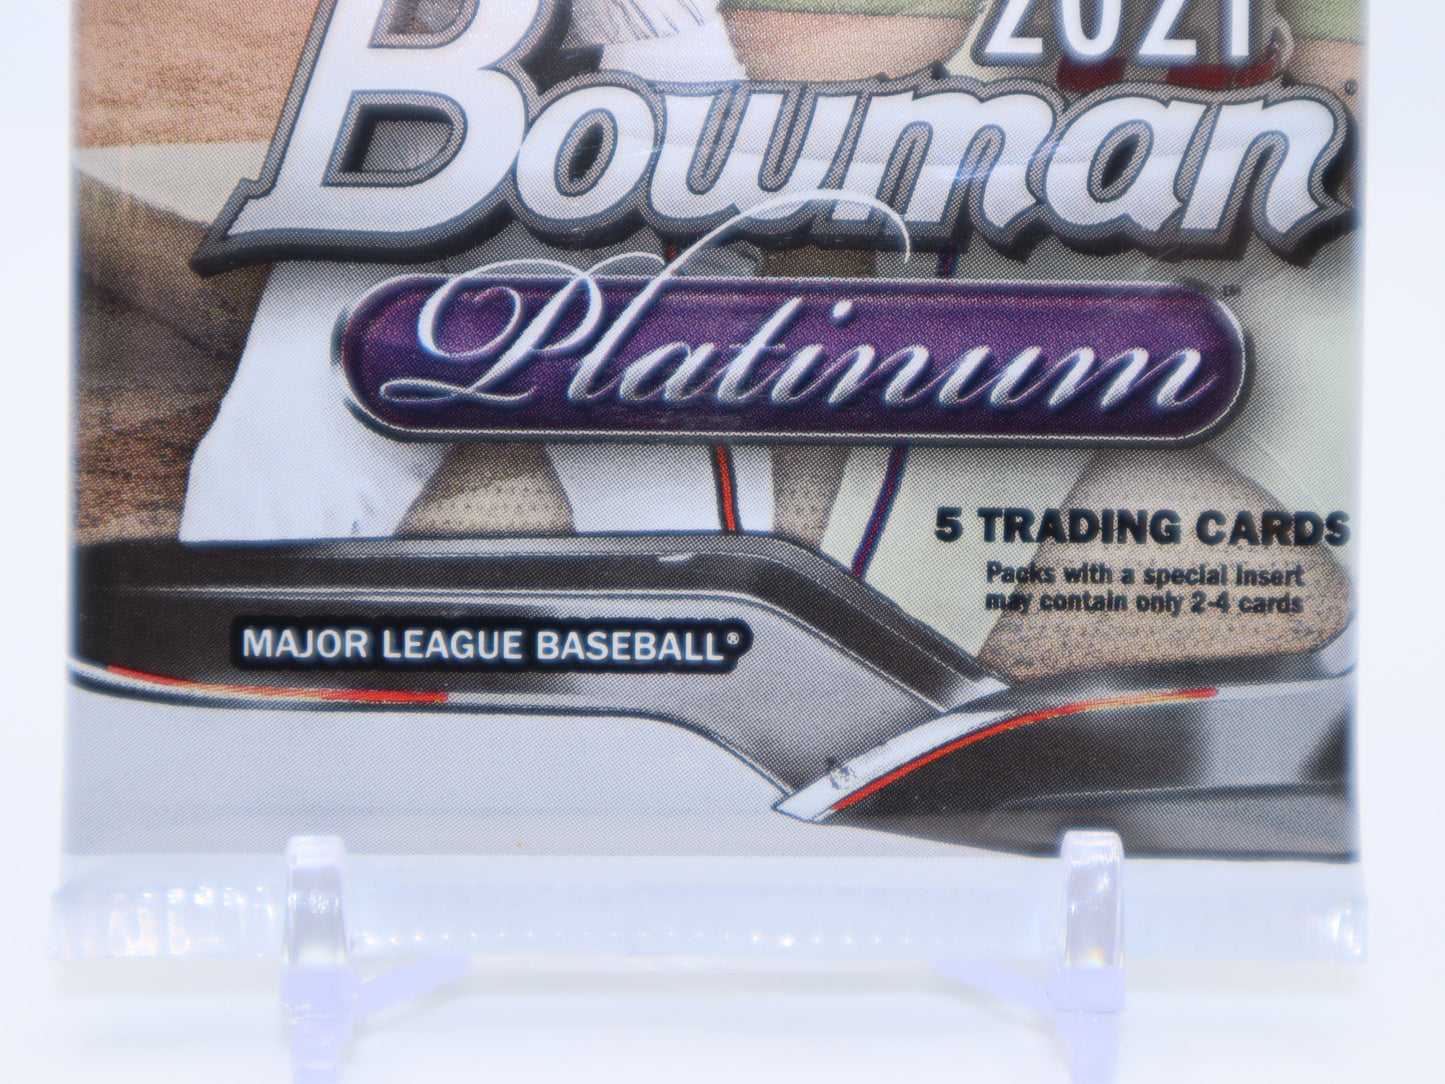 2021 Bowman Platinum Baseball Cards Mega Box Wax Pack - Collectibles